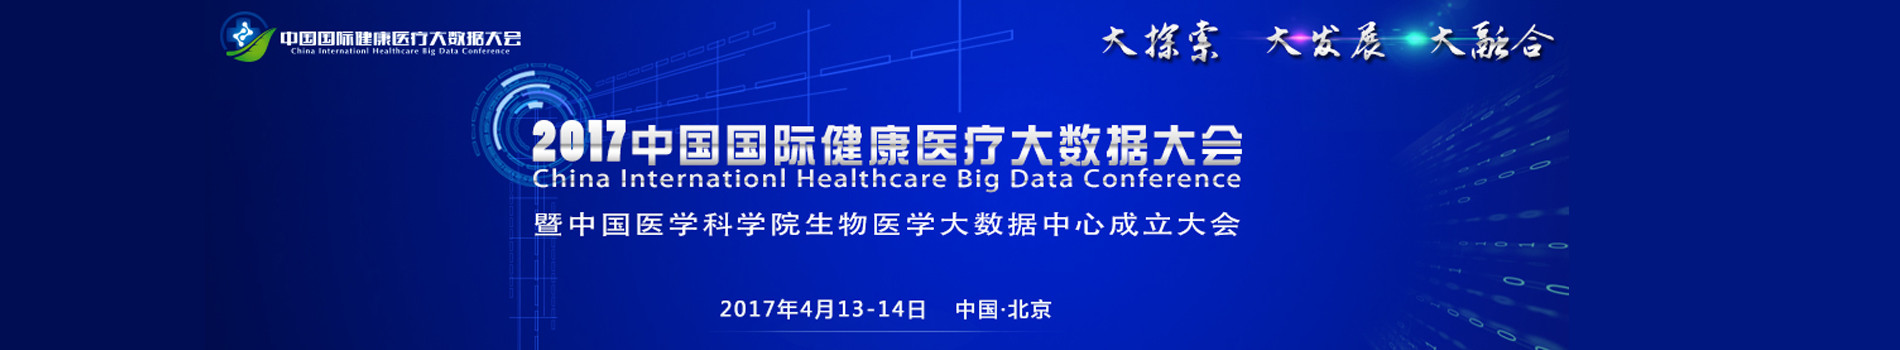 2017中国国际健康医疗大数据大会暨中国医学科学院生物医学大数据中心成立大会